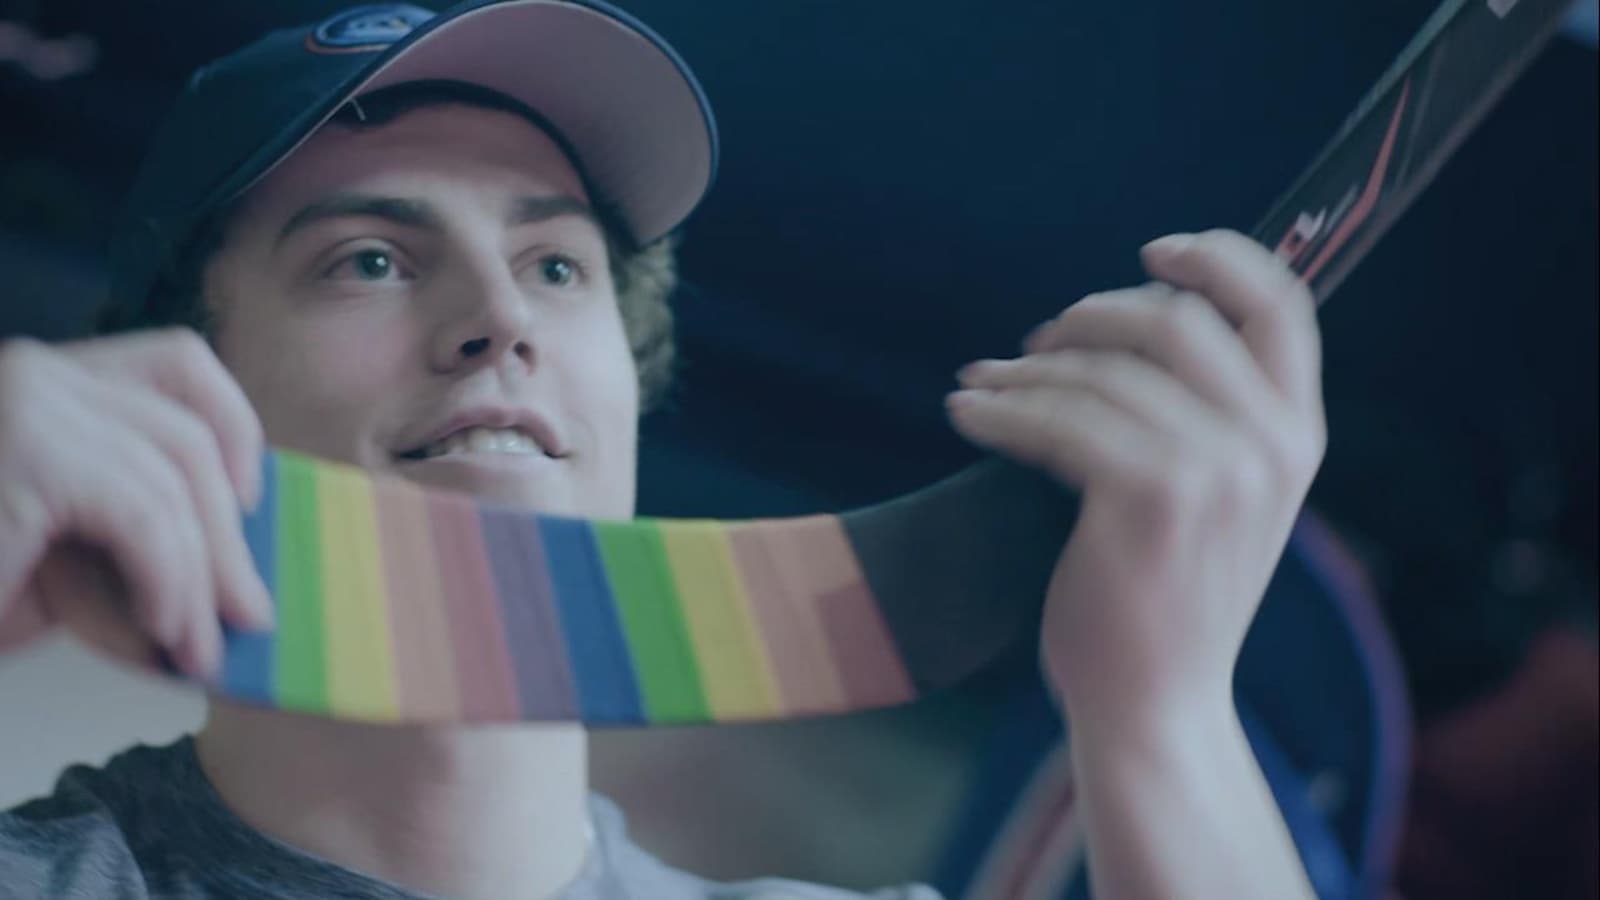 Un joueur de hockey a enroulé son bâton d'un ruban aux couleurs de l'arc-en-ciel.